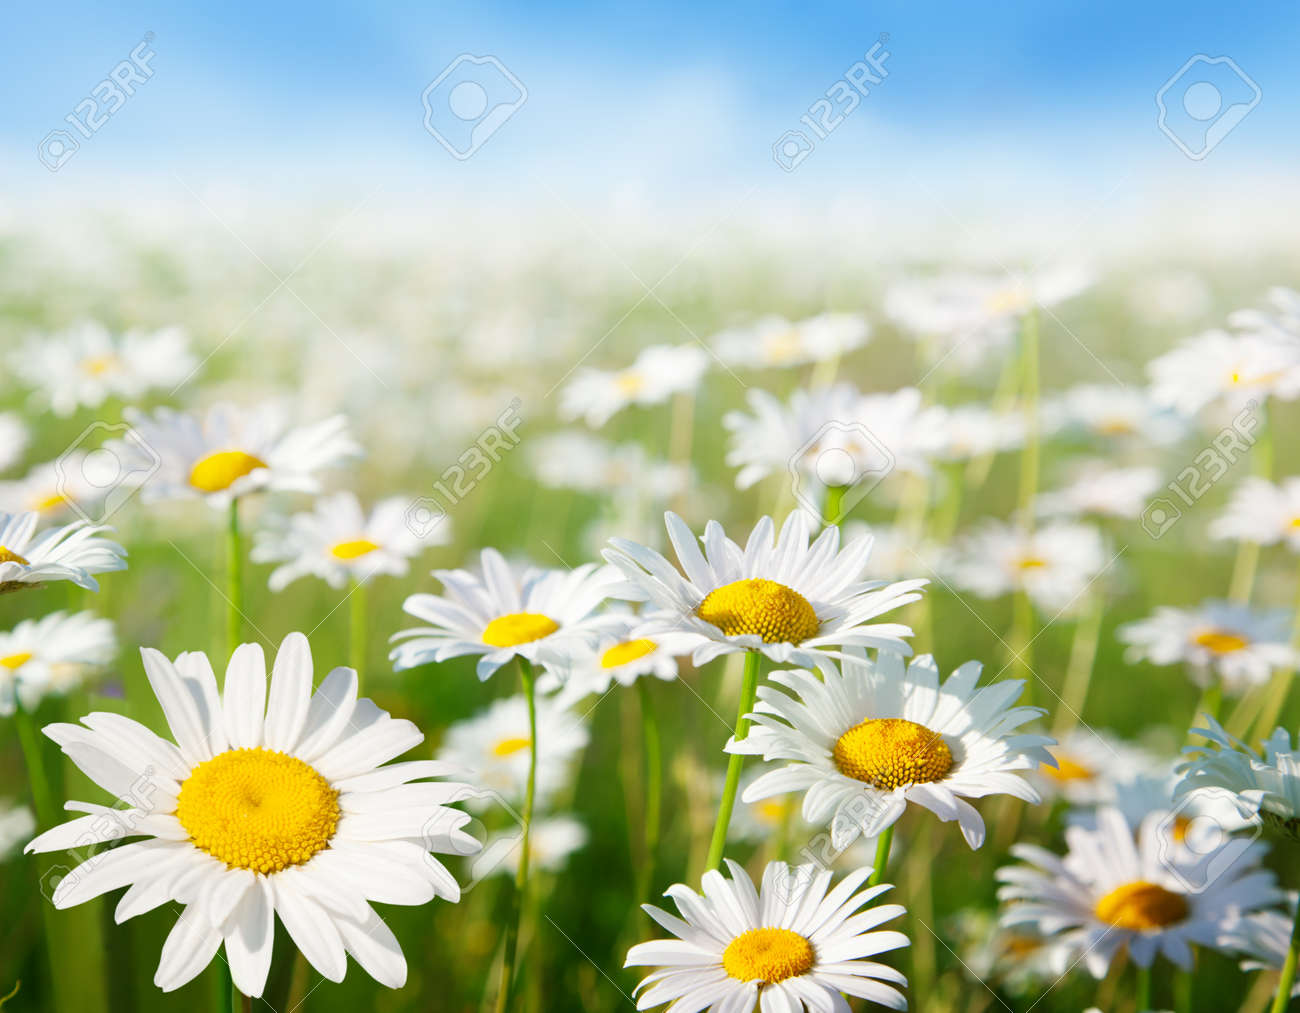 10120634-field-of-daisy-flowers.jpg